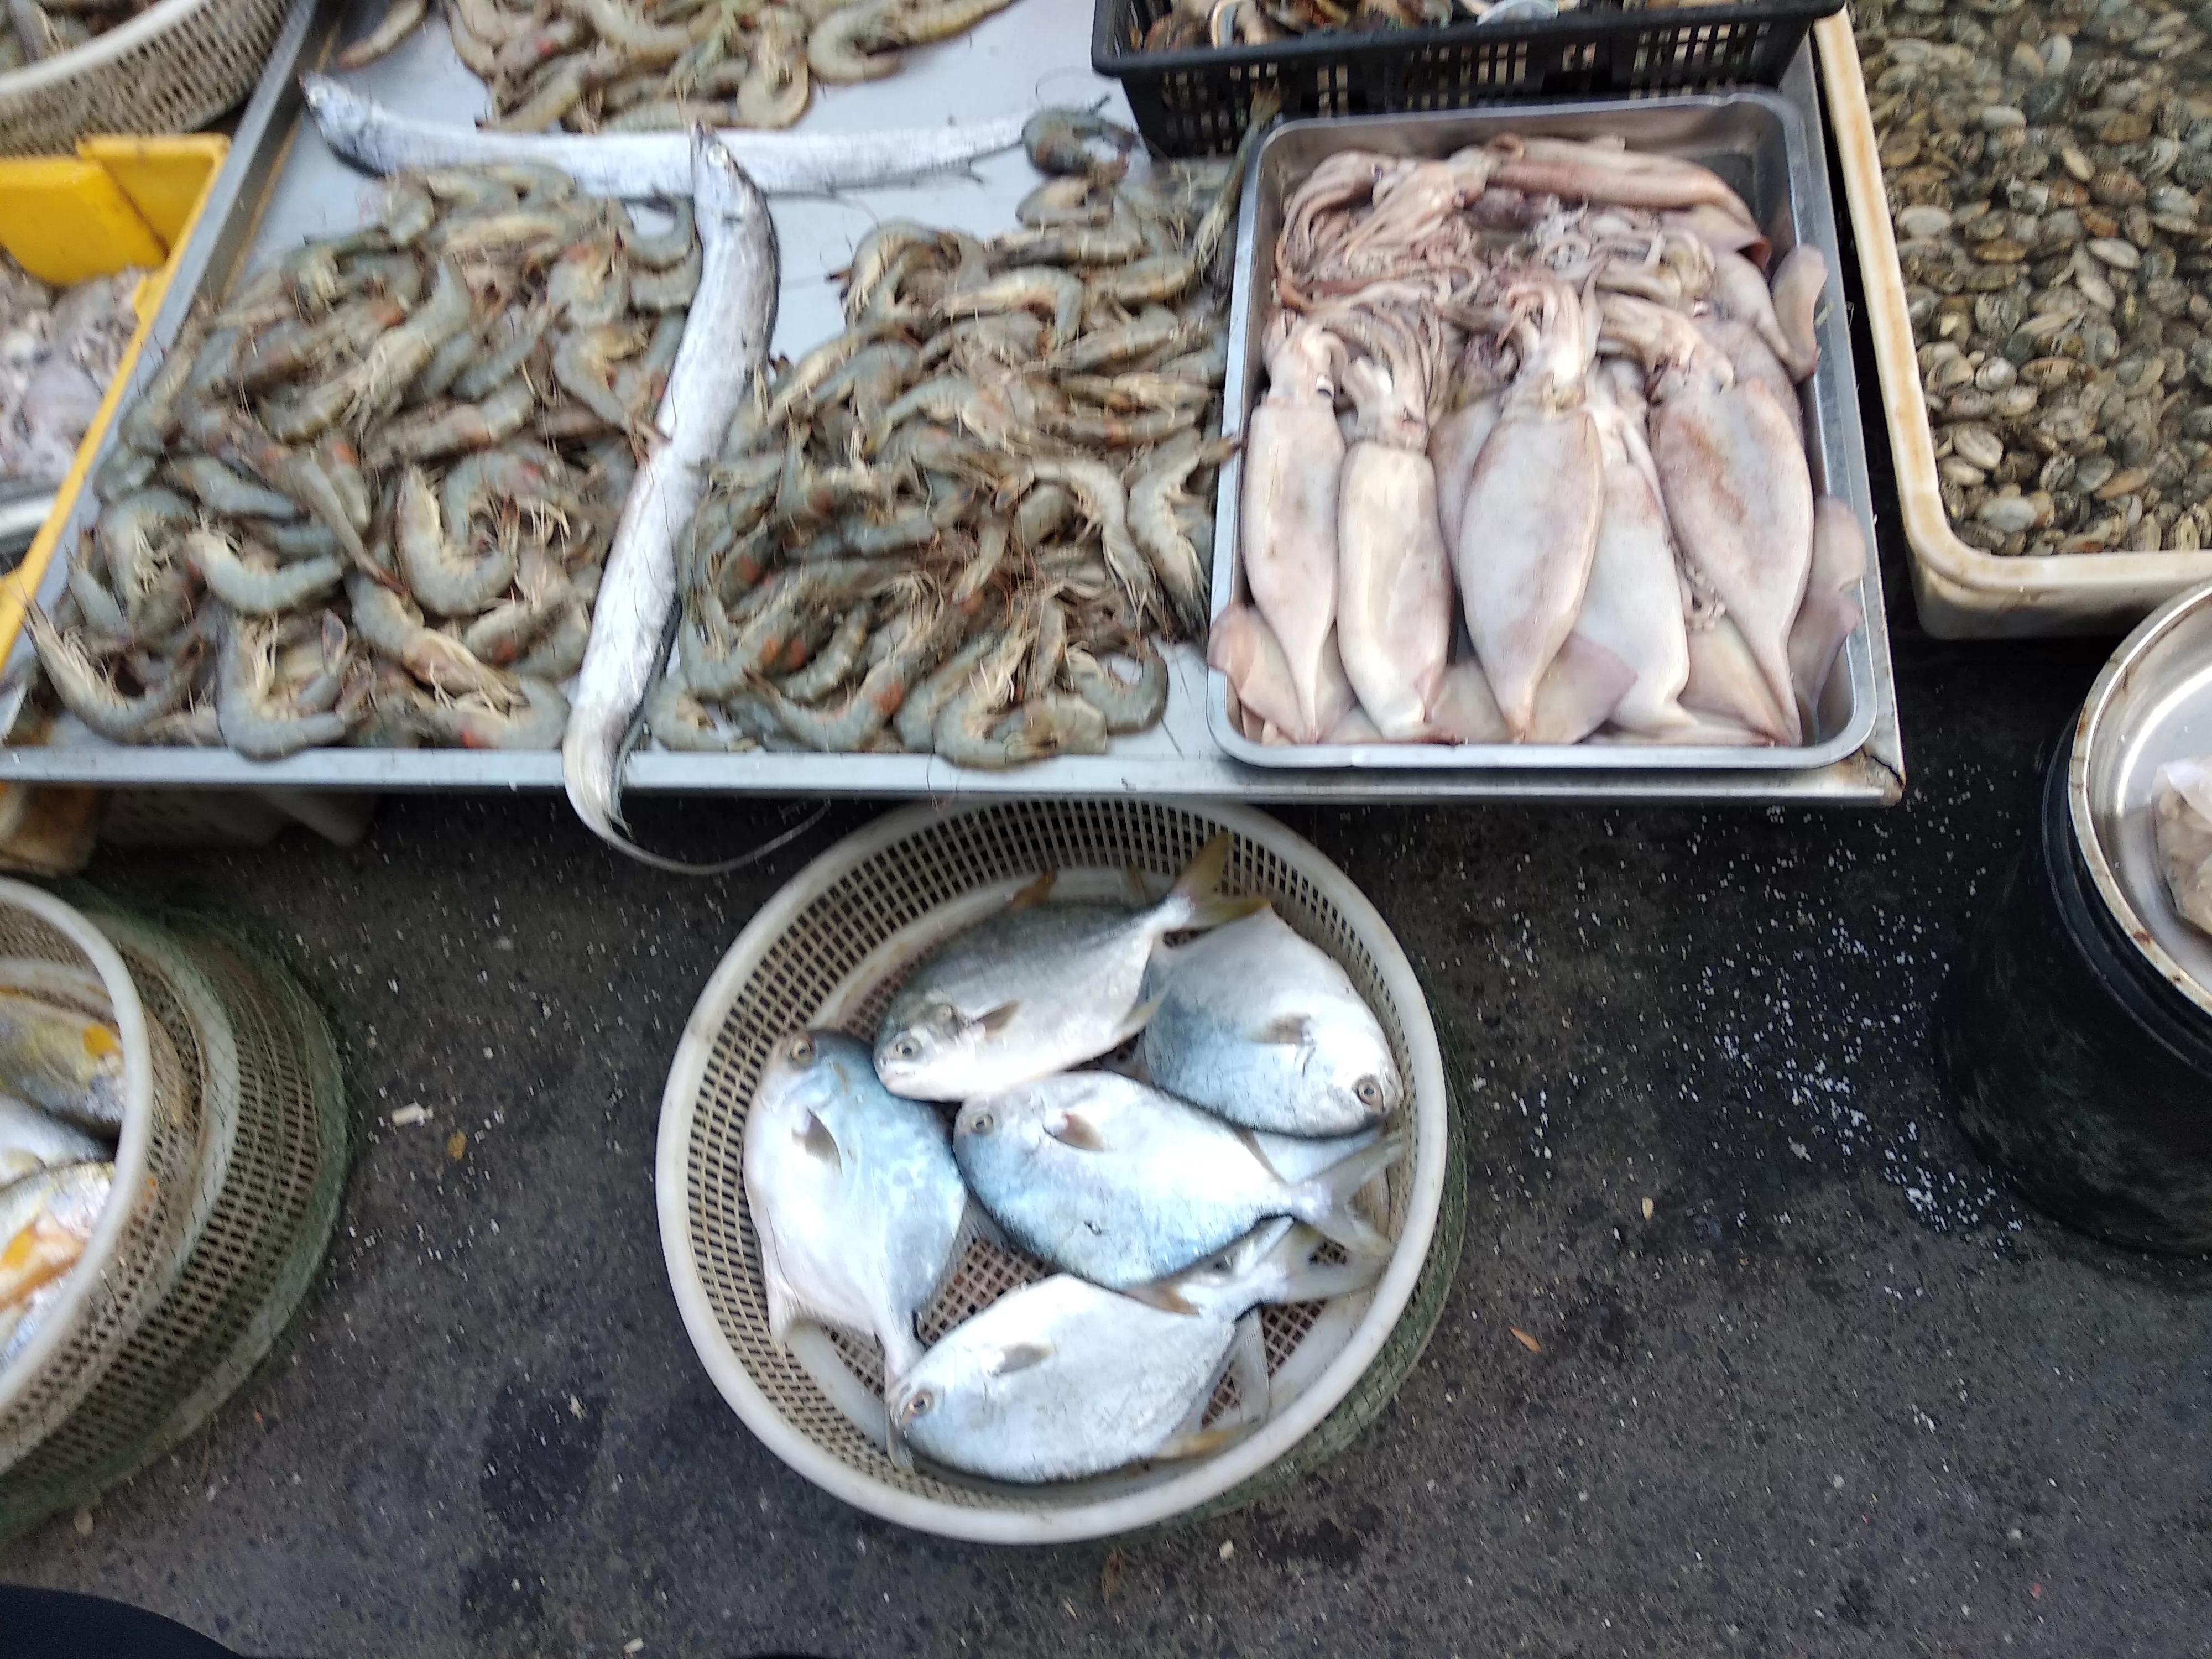 初冬收获季，大连各种海鲜“占领”市场，最便宜的海鲜2元一斤